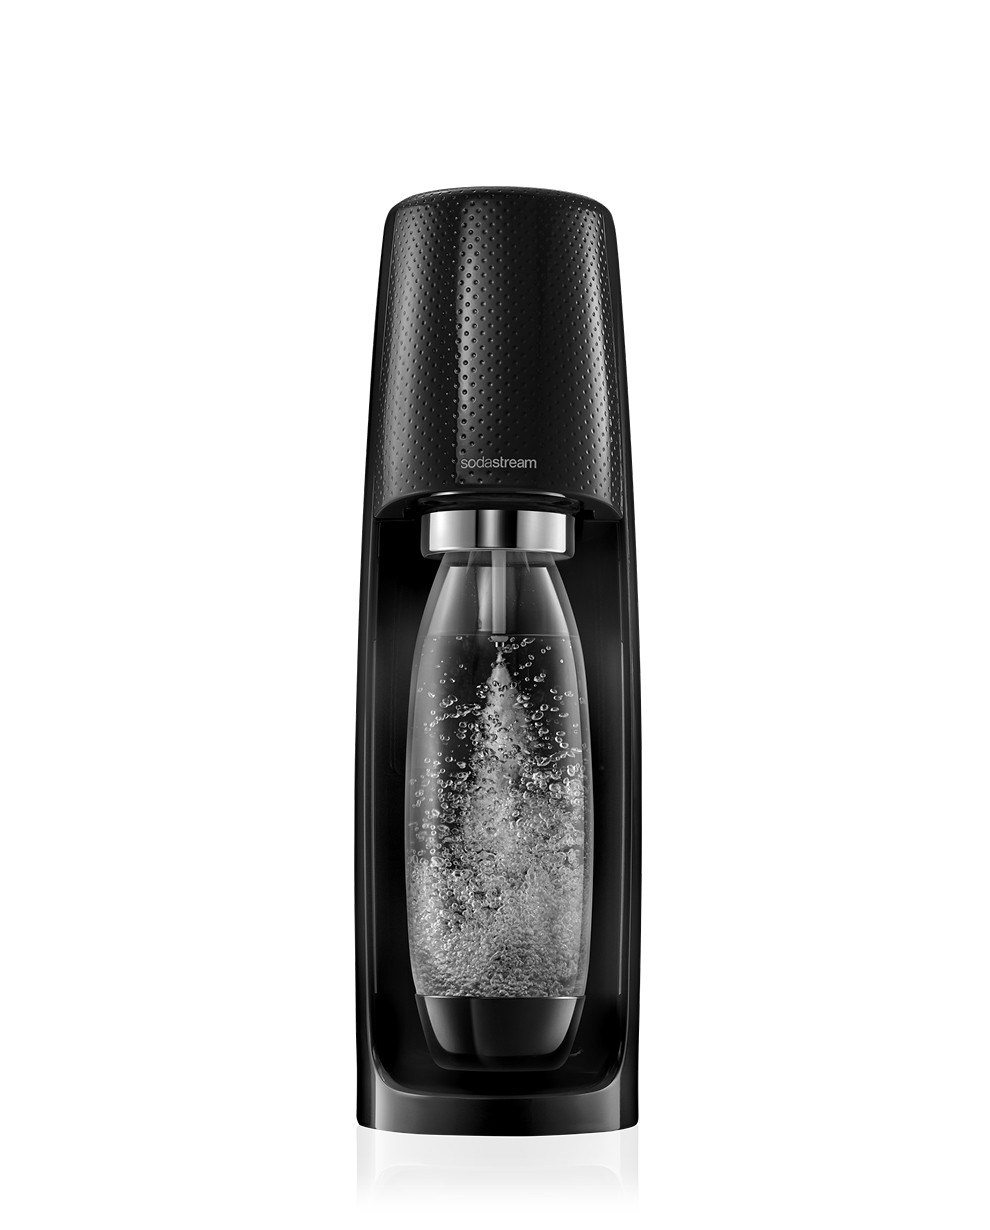 Sodastream Gasatore D'Acqua Spirit Mega Pack Black 3 Bottiglie E 1 Cilindro Inclusi 80L Nero & Bottiglie Fuse Per Gasatore Source Power Play 